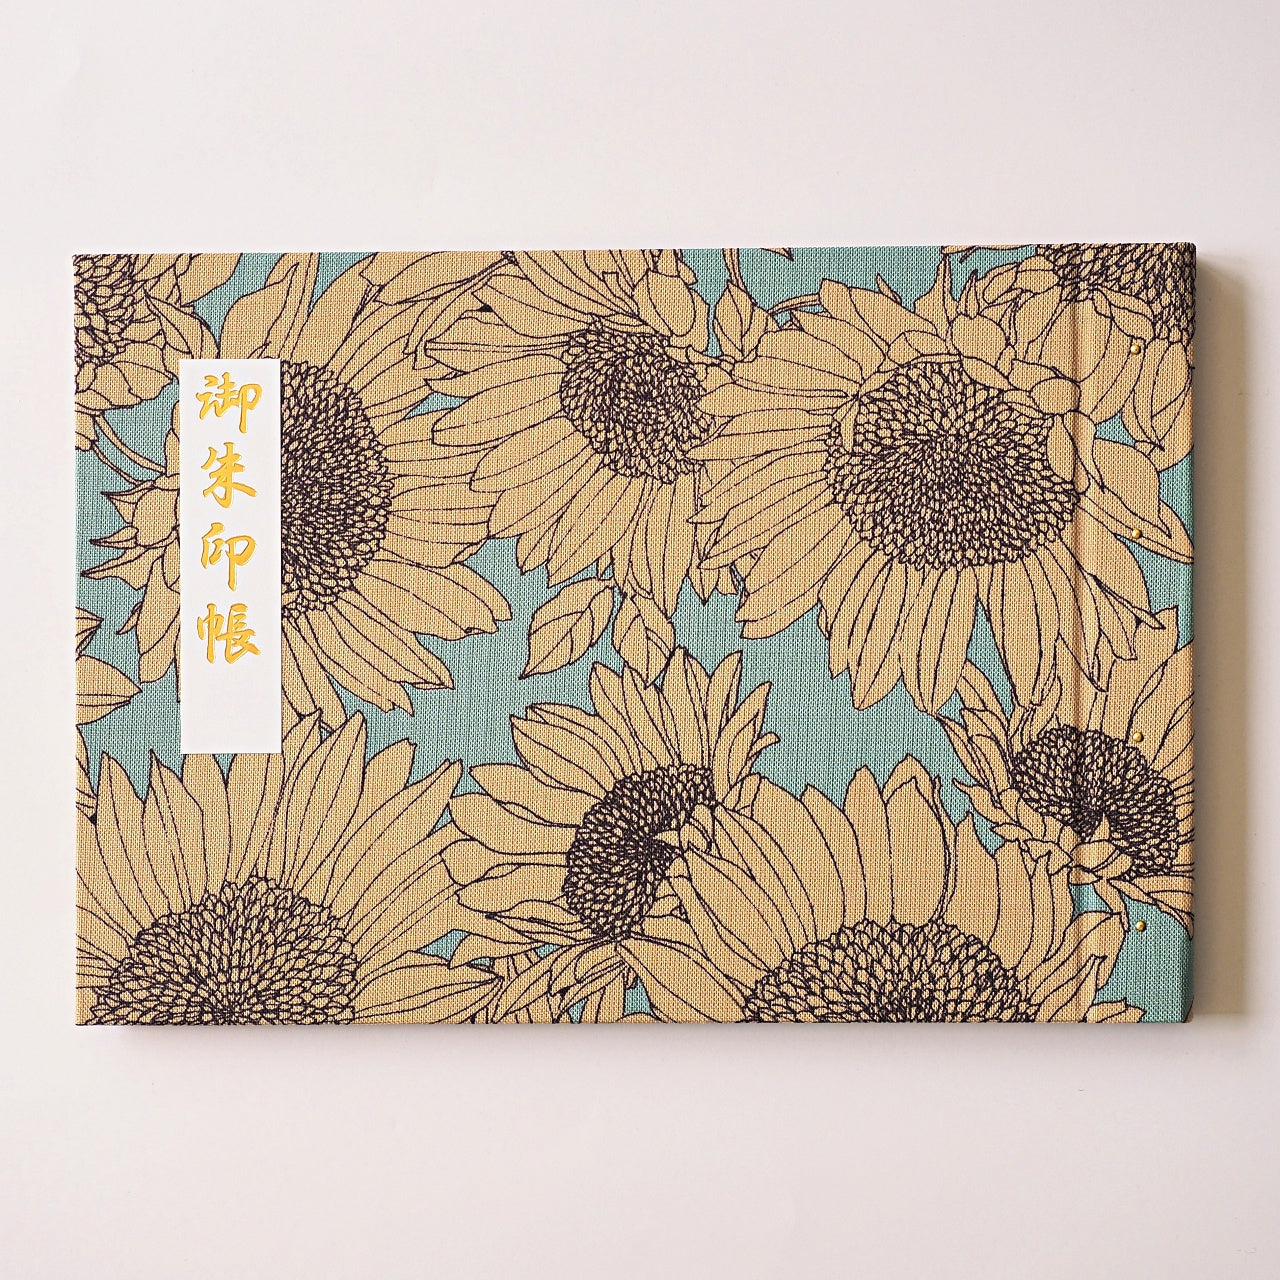 Goshuin holder (spread size) "Kiyora" Aoten Sunflower